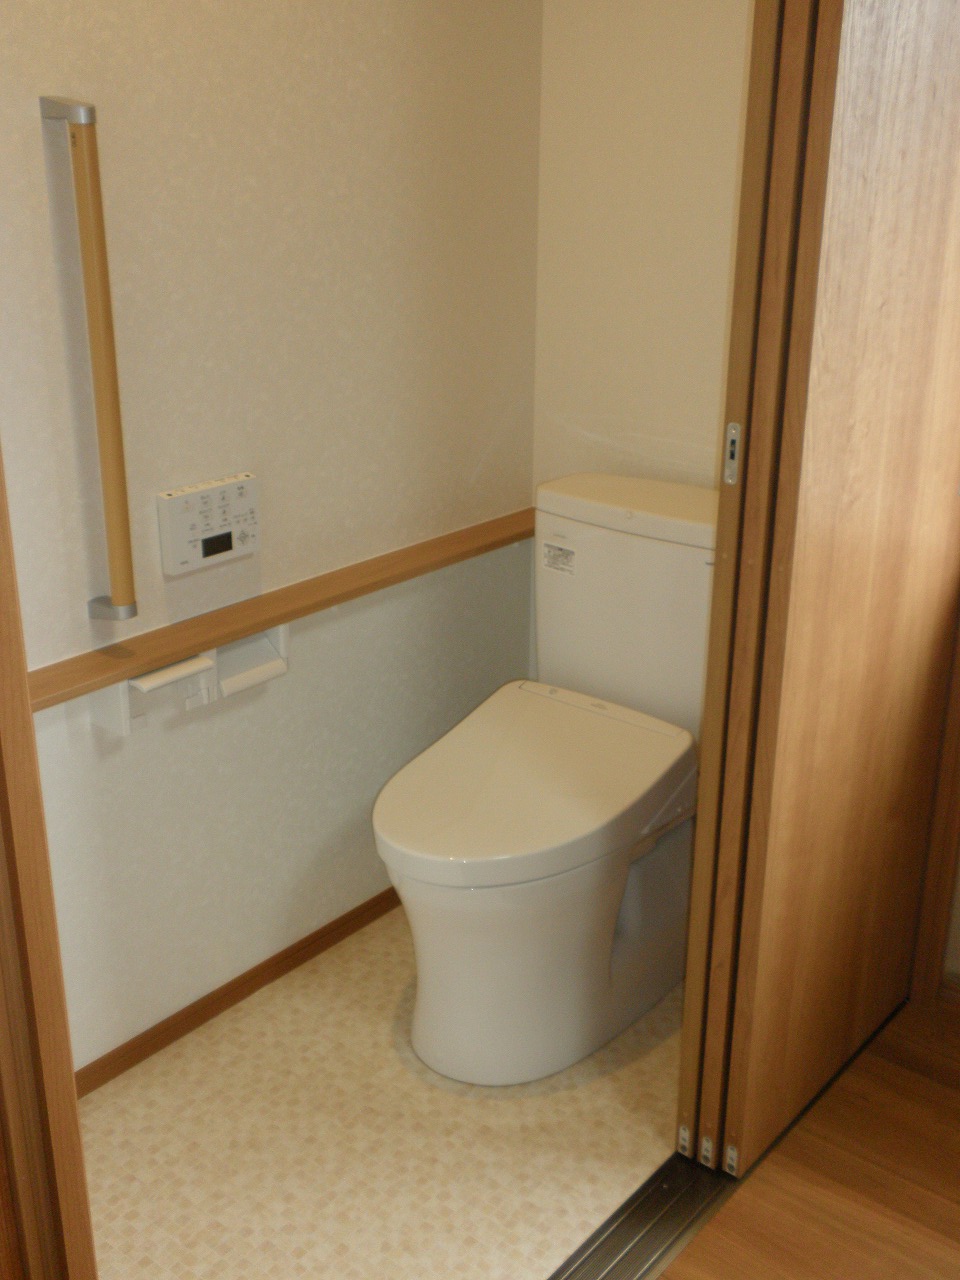 和室の押入にトイレを新設。畳からフローリングに張り替える事で車椅子での介助にも対応可能に